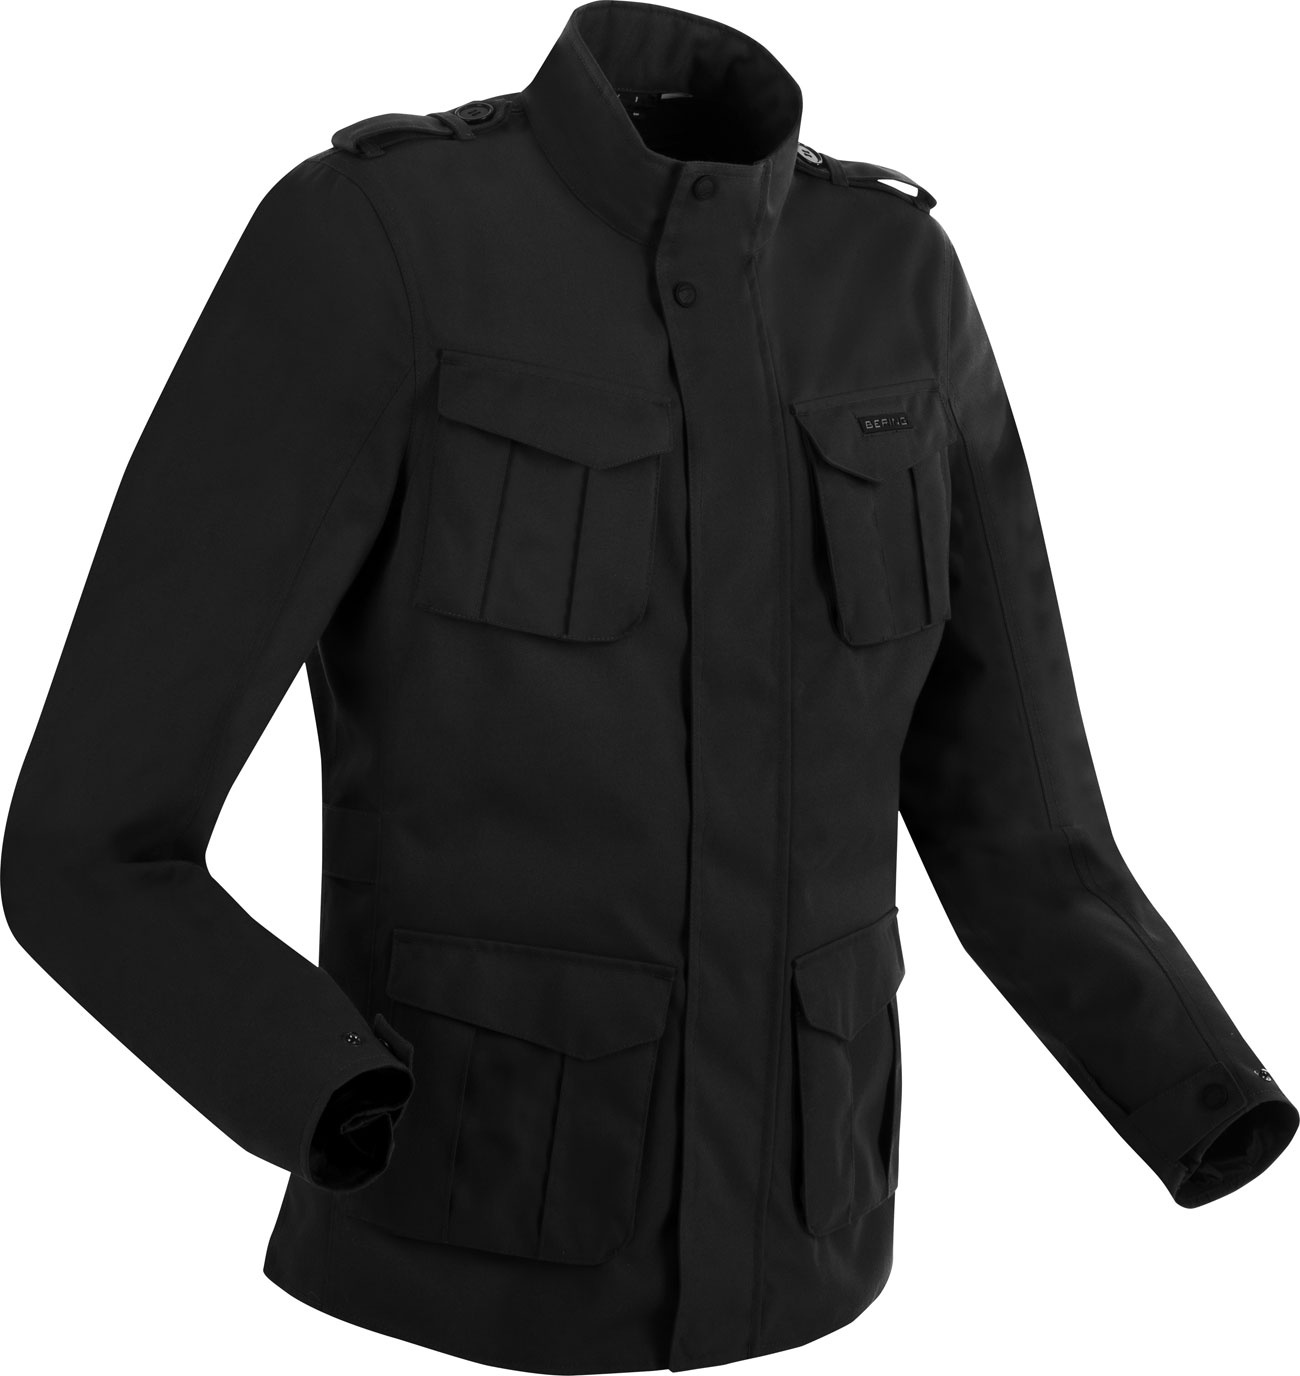 Bering Norris Evo, veste textile imperméable - Noir - L